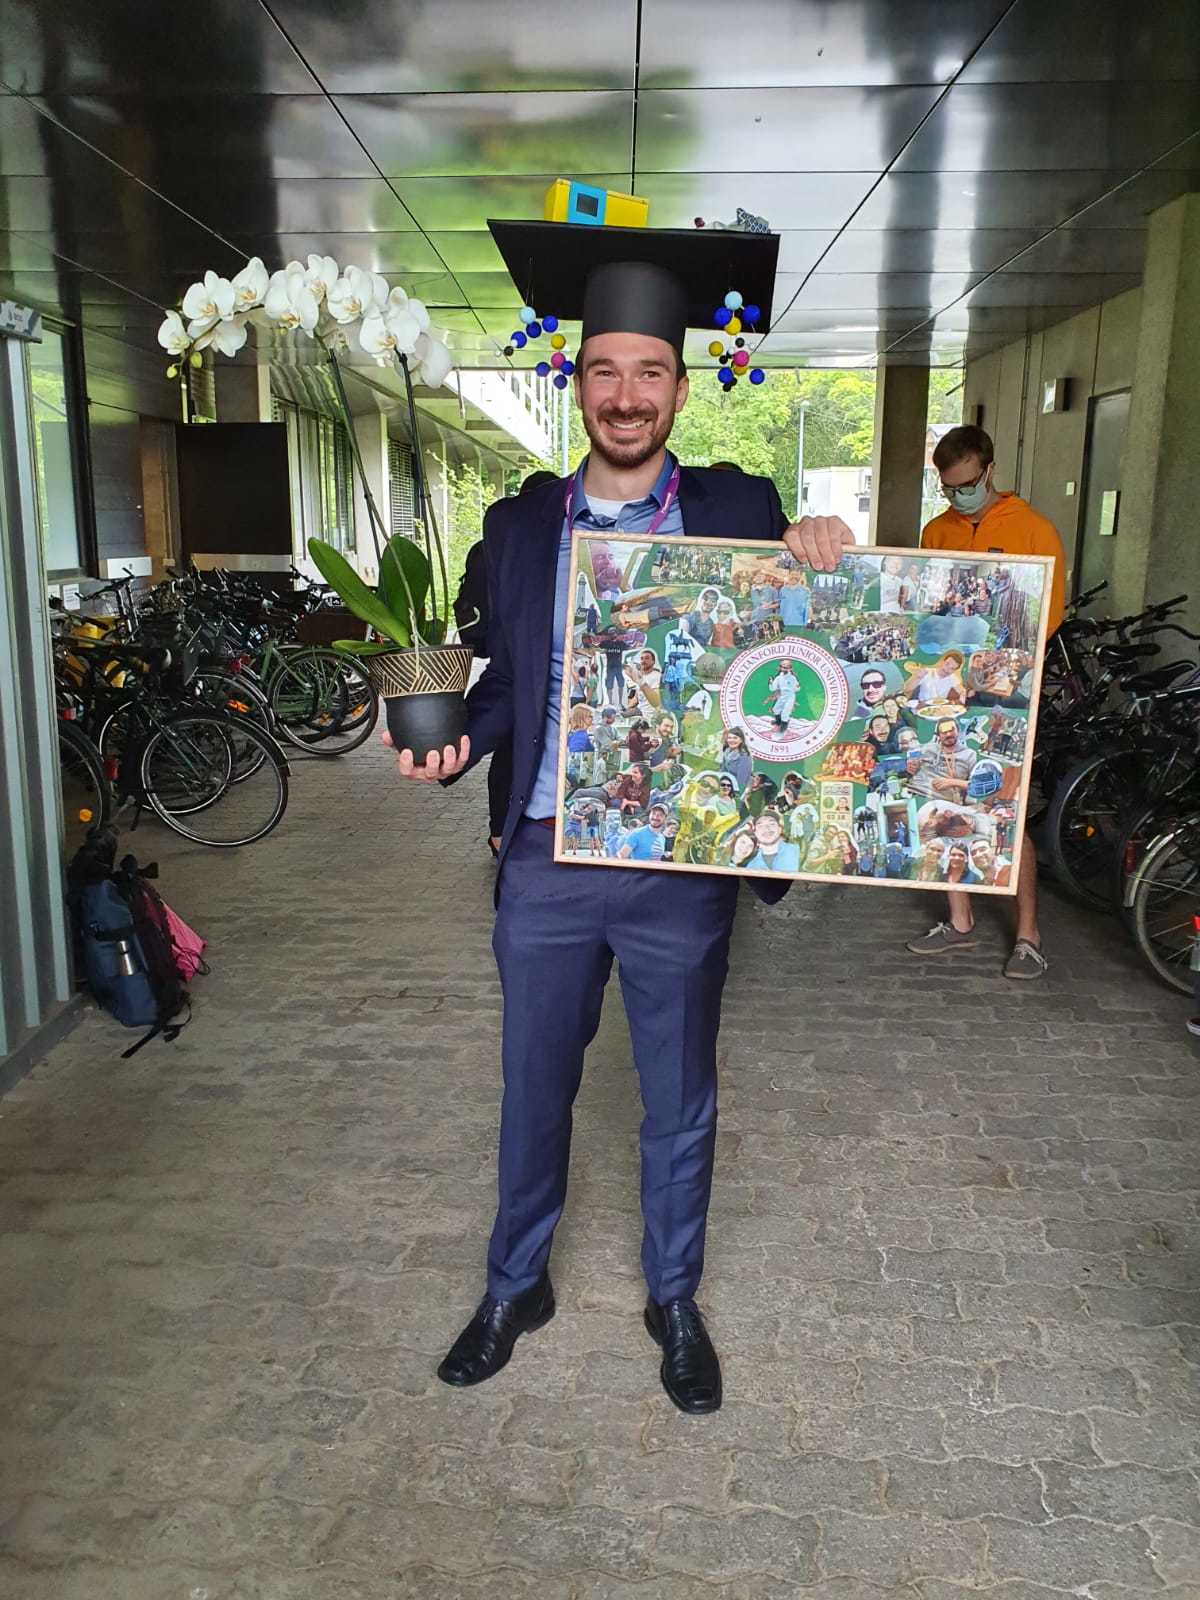 PhD defense - Congratulations, Johannes!